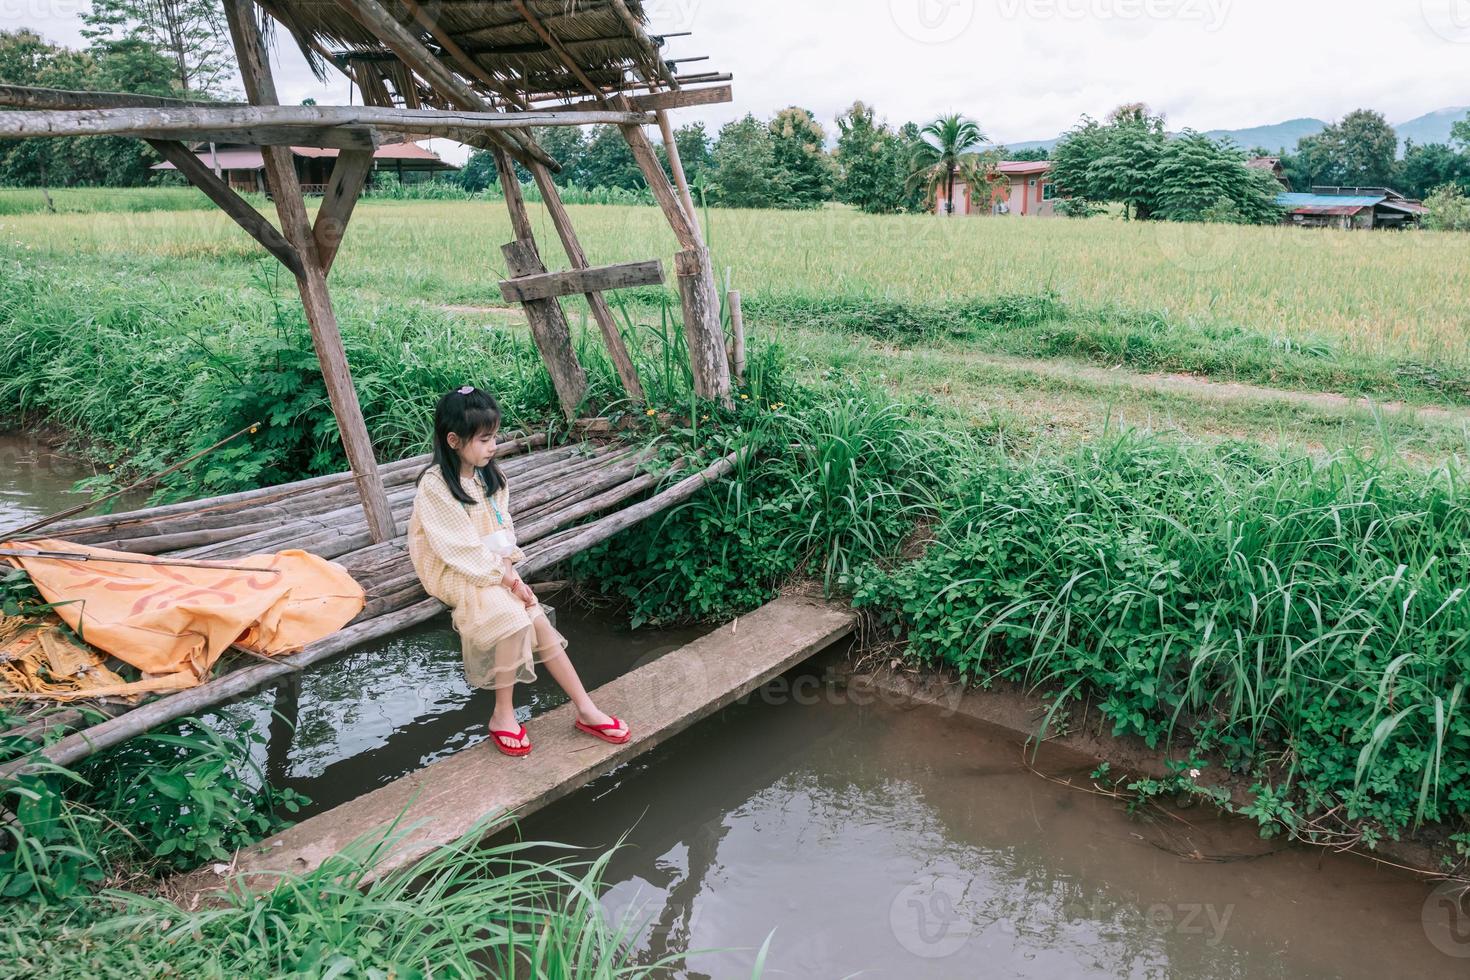 garota viaja para a província de bantailue cafe nan, tailândia foto